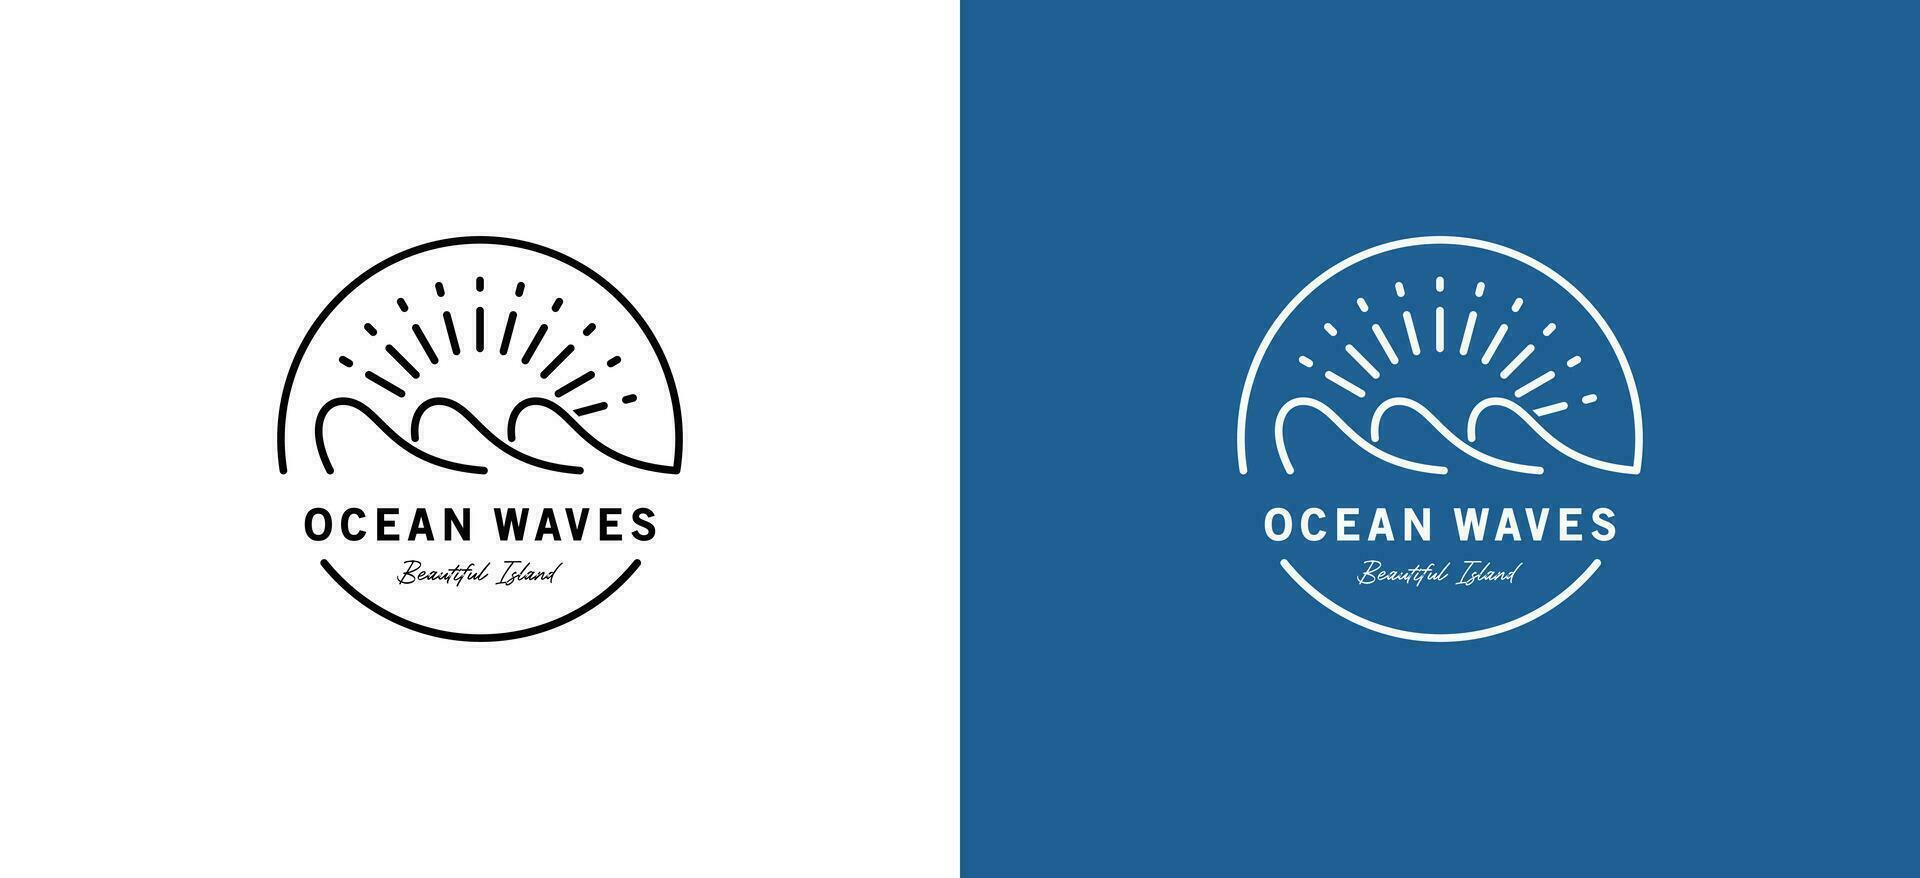 Créatif océan ligne art logo vecteur minimaliste conception modèle